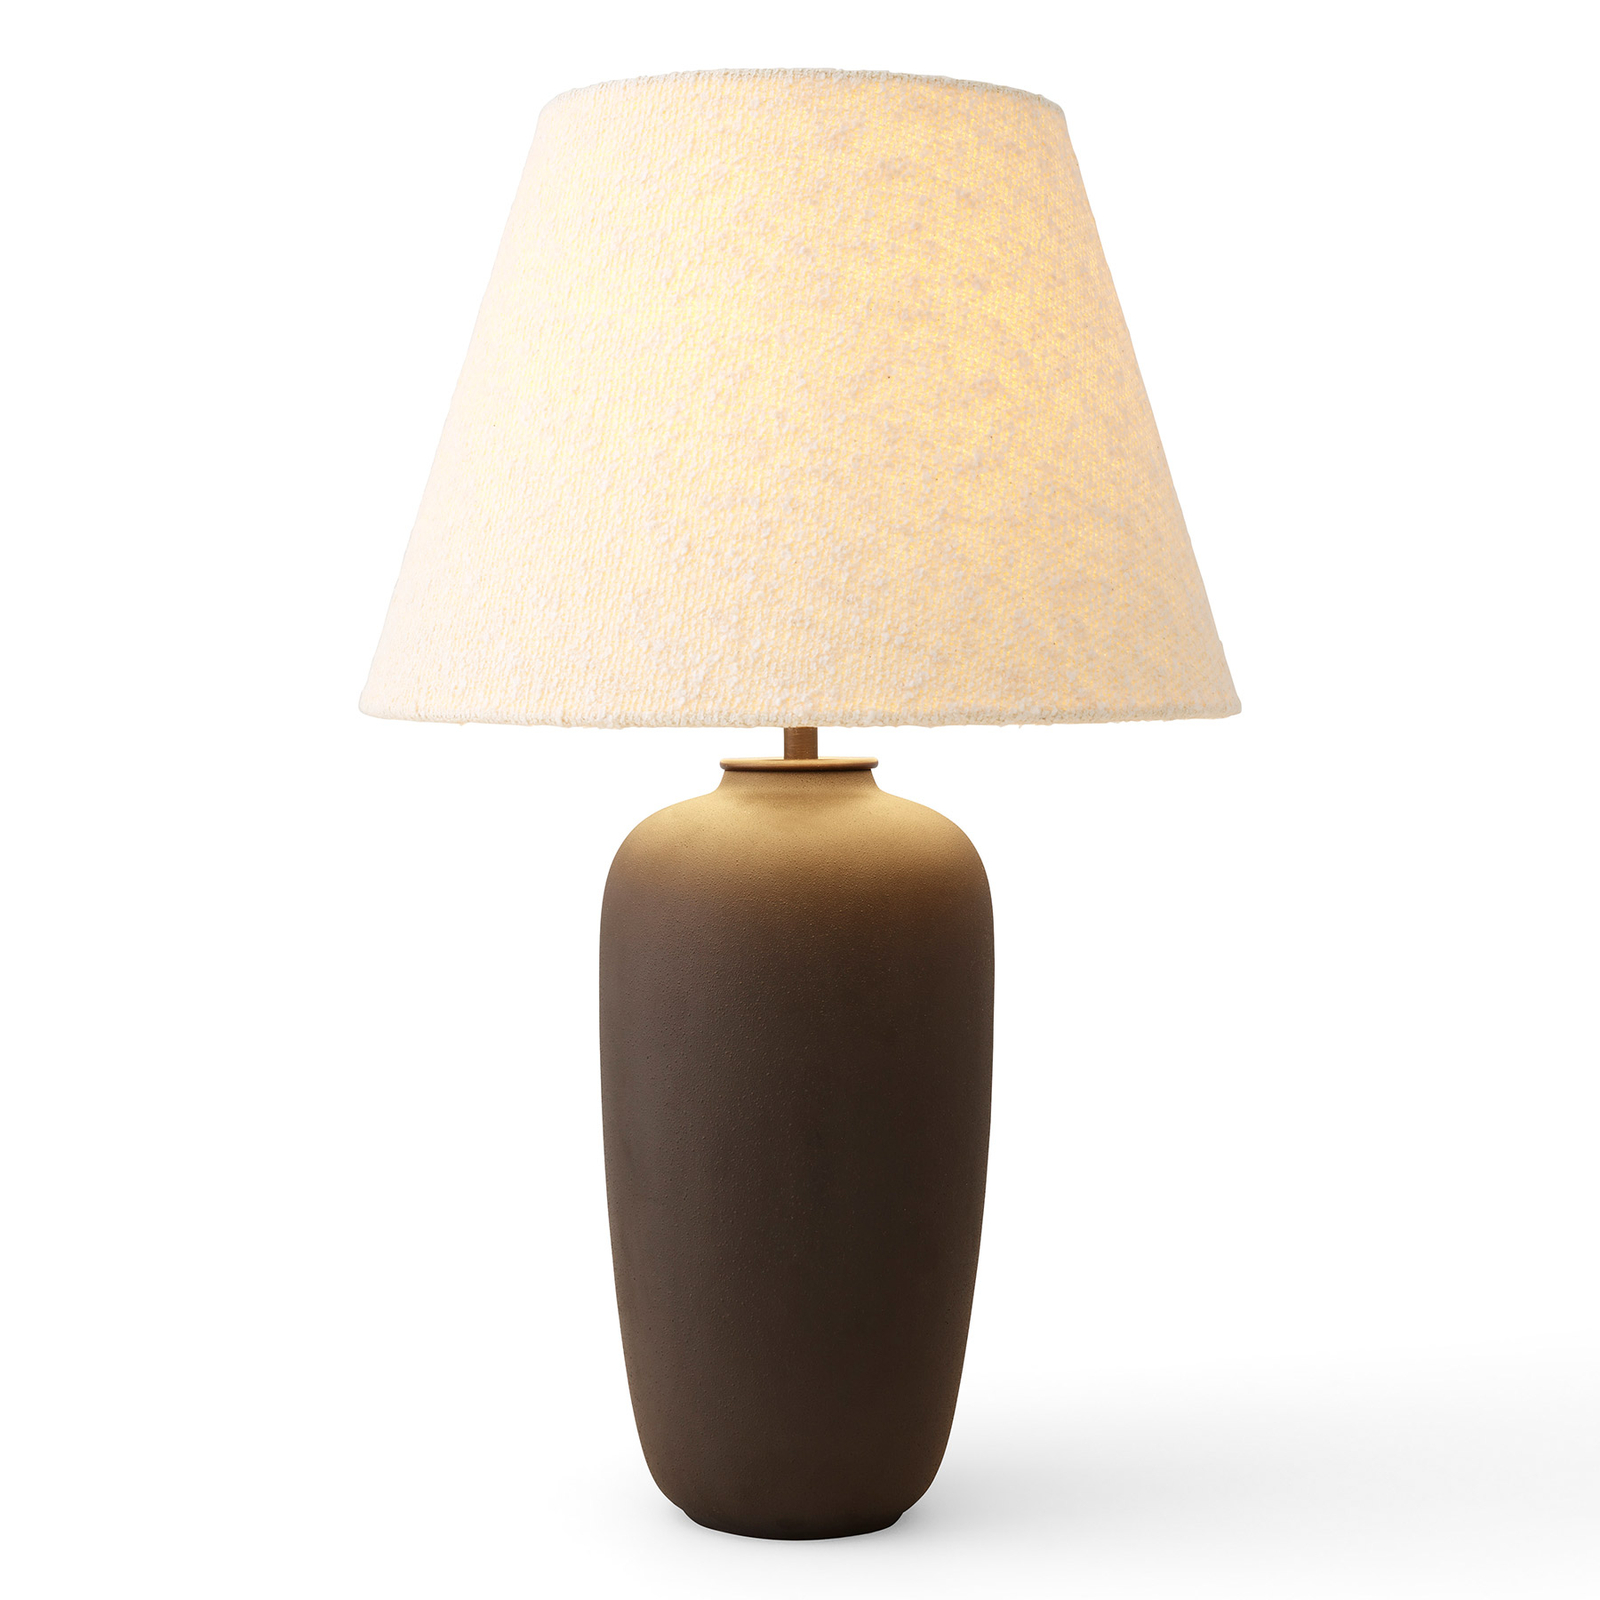 Menu Torso lampa stołowa LED, brązowa/biała, 57 cm